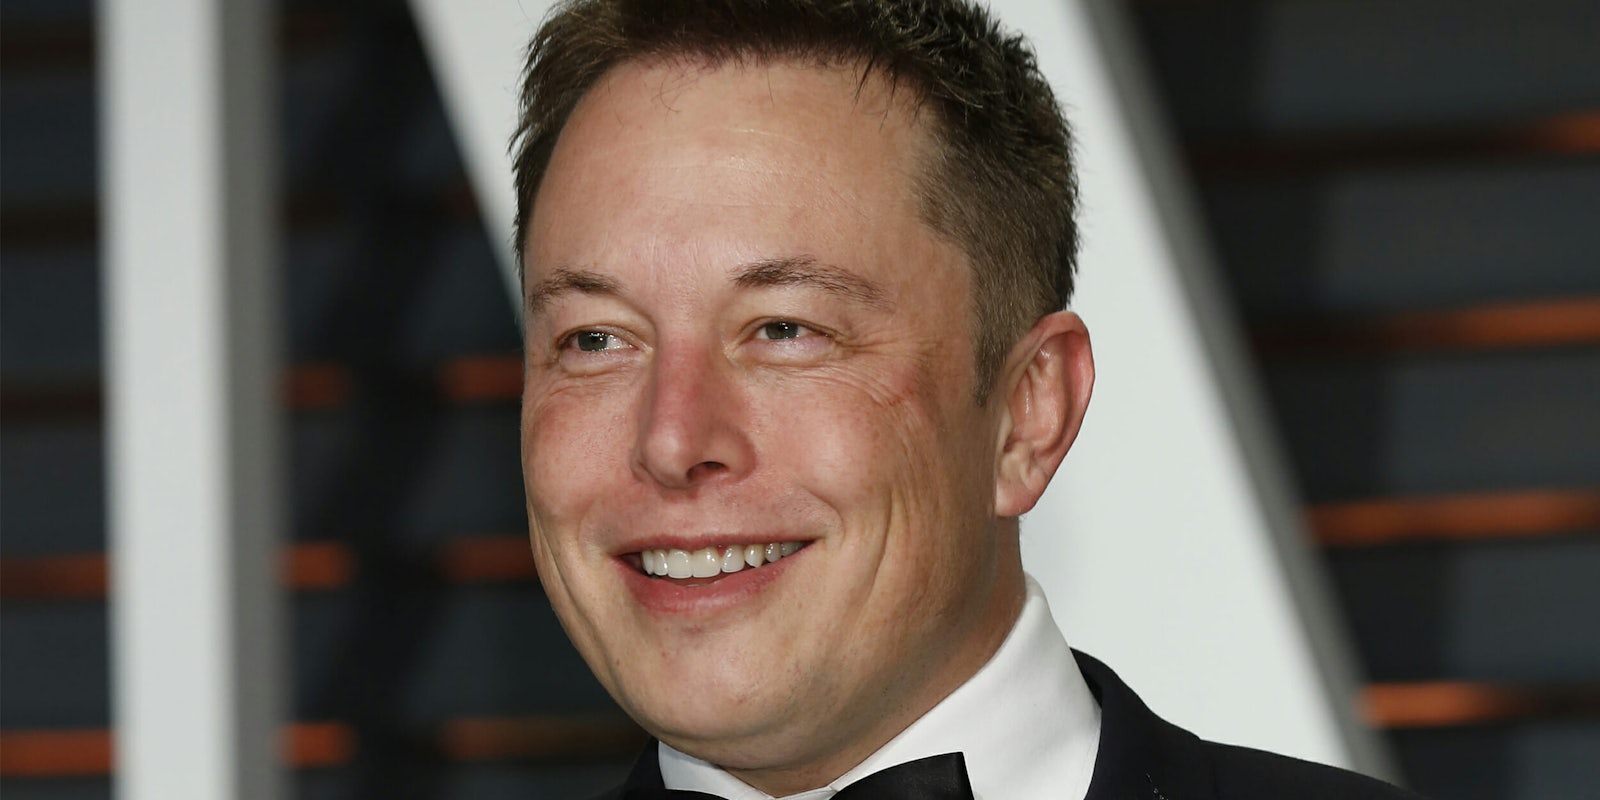 Elon Musk in tuxedo, smiling